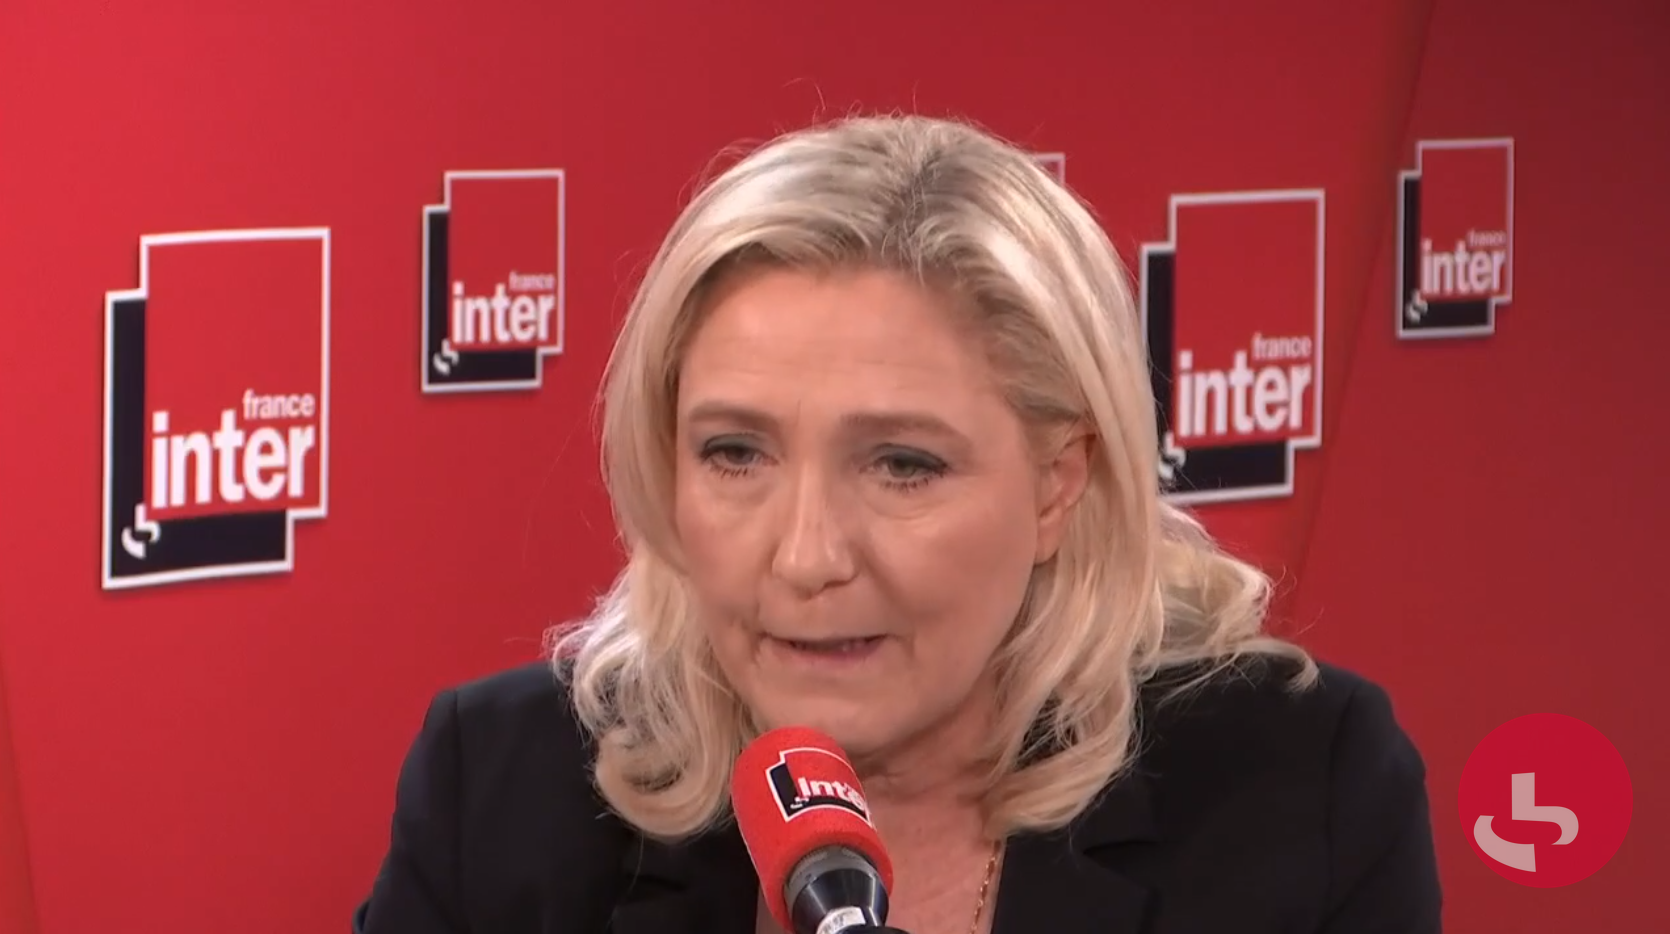 Marine Le Pen sur l’invasion de l’UE orchestrée par la Turquie : “Il faut envoyer des hommes à la Grèce” (VIDÉO)